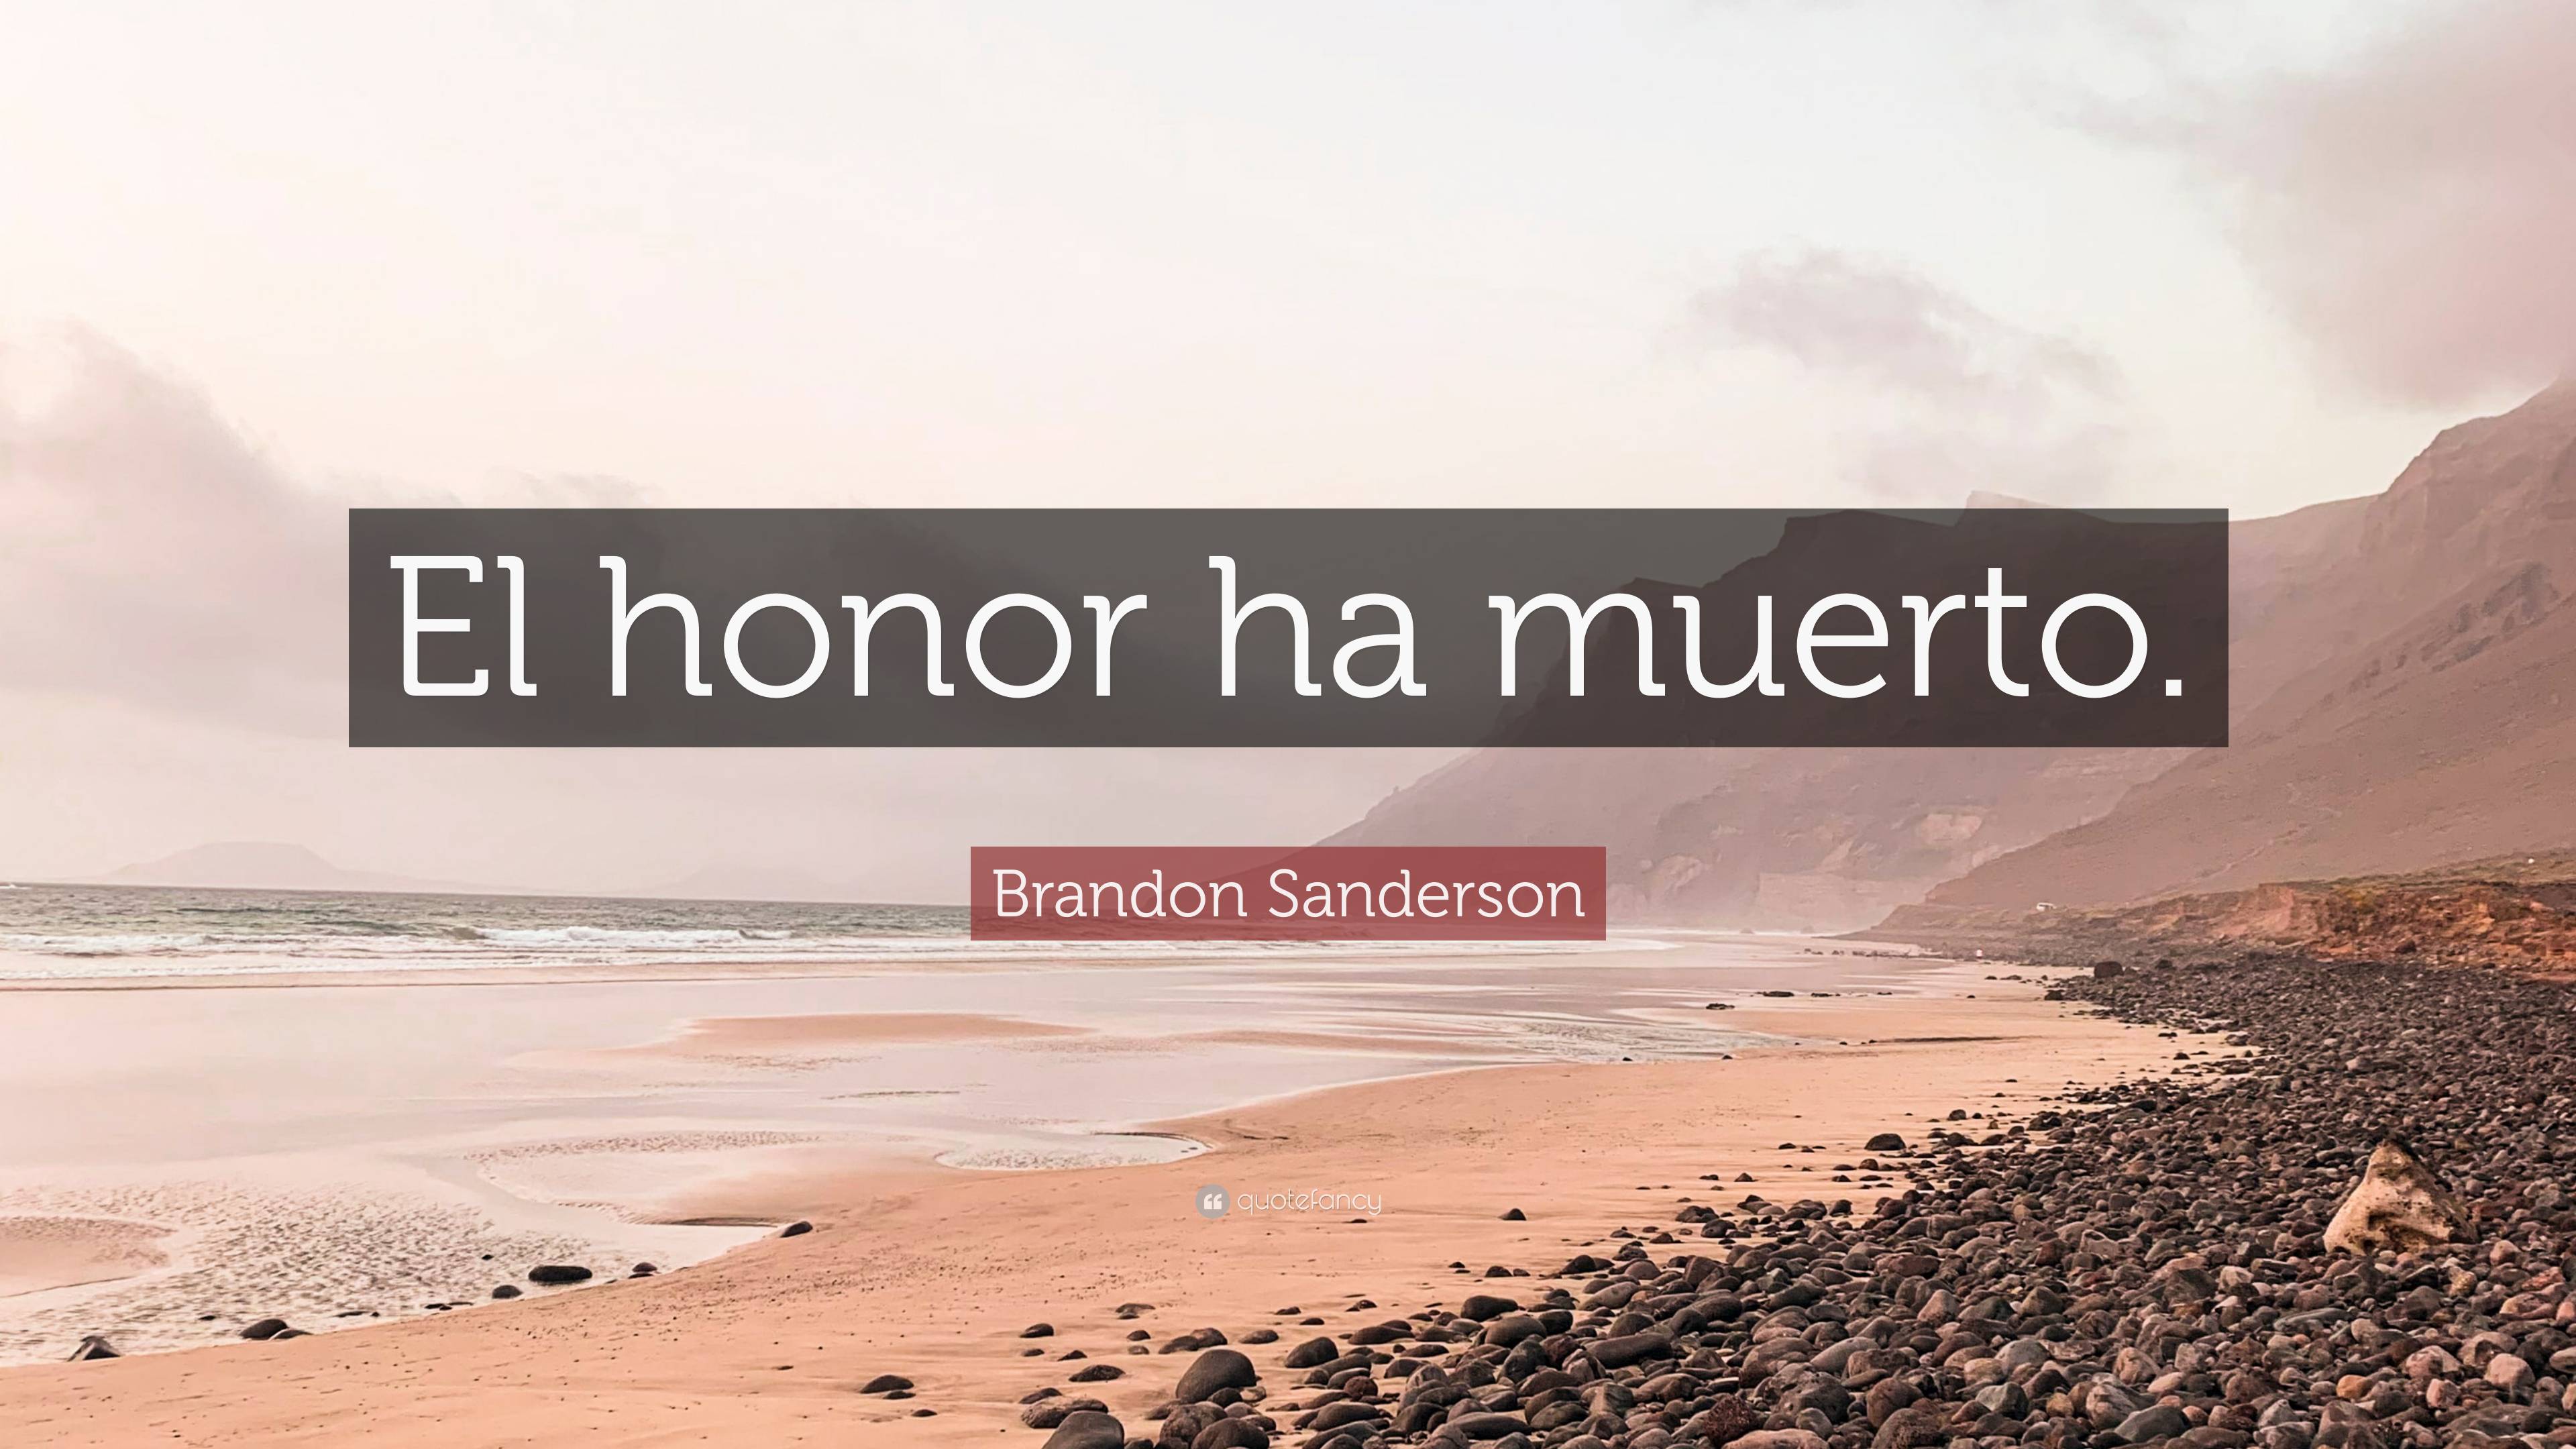 Brandon Sanderson Quote: “El honor ha muerto.”